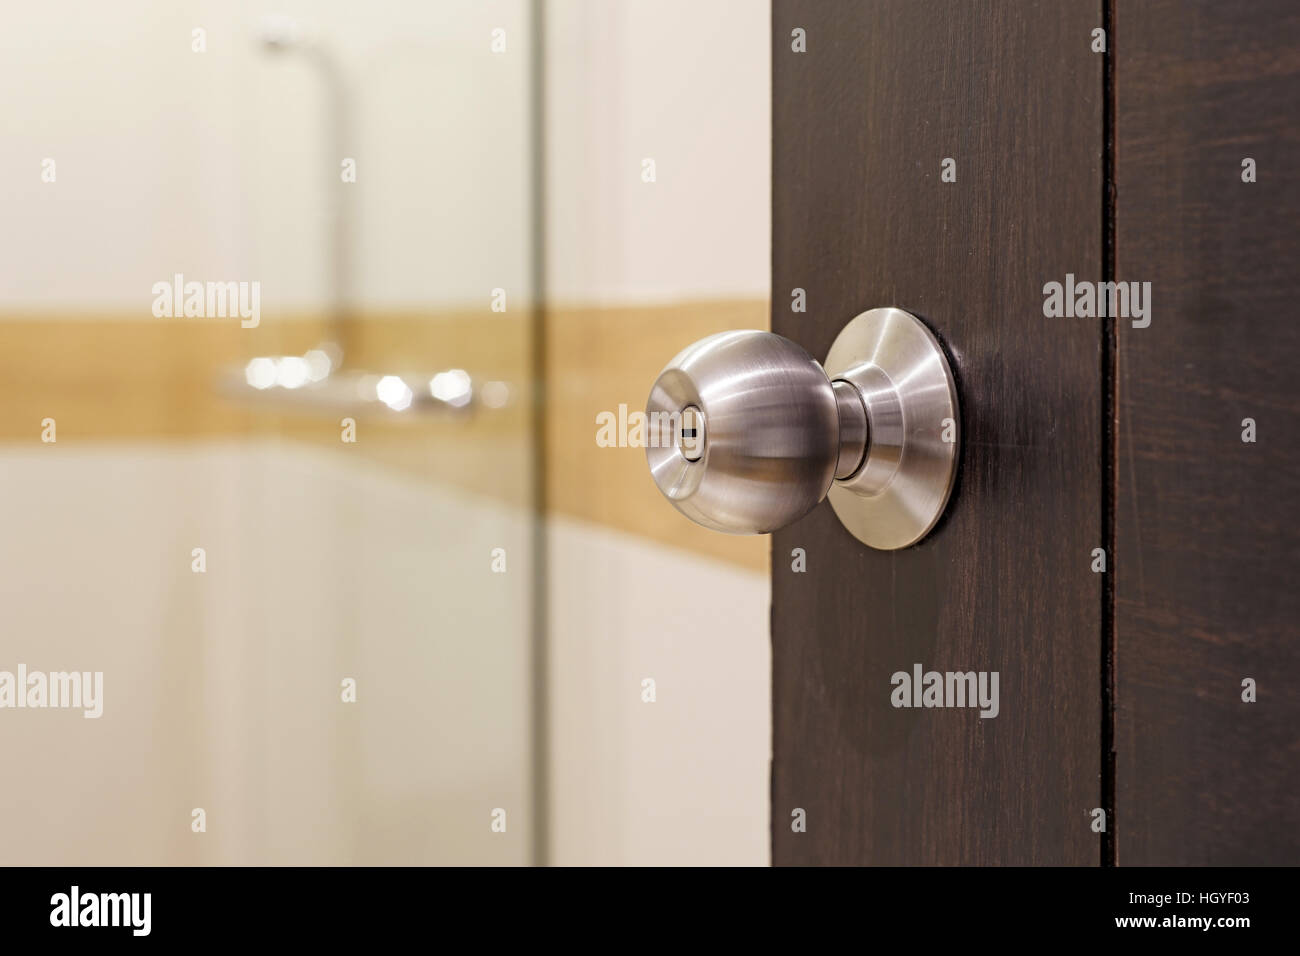 closeup of stainless doorknob on wooden door Stock Photo